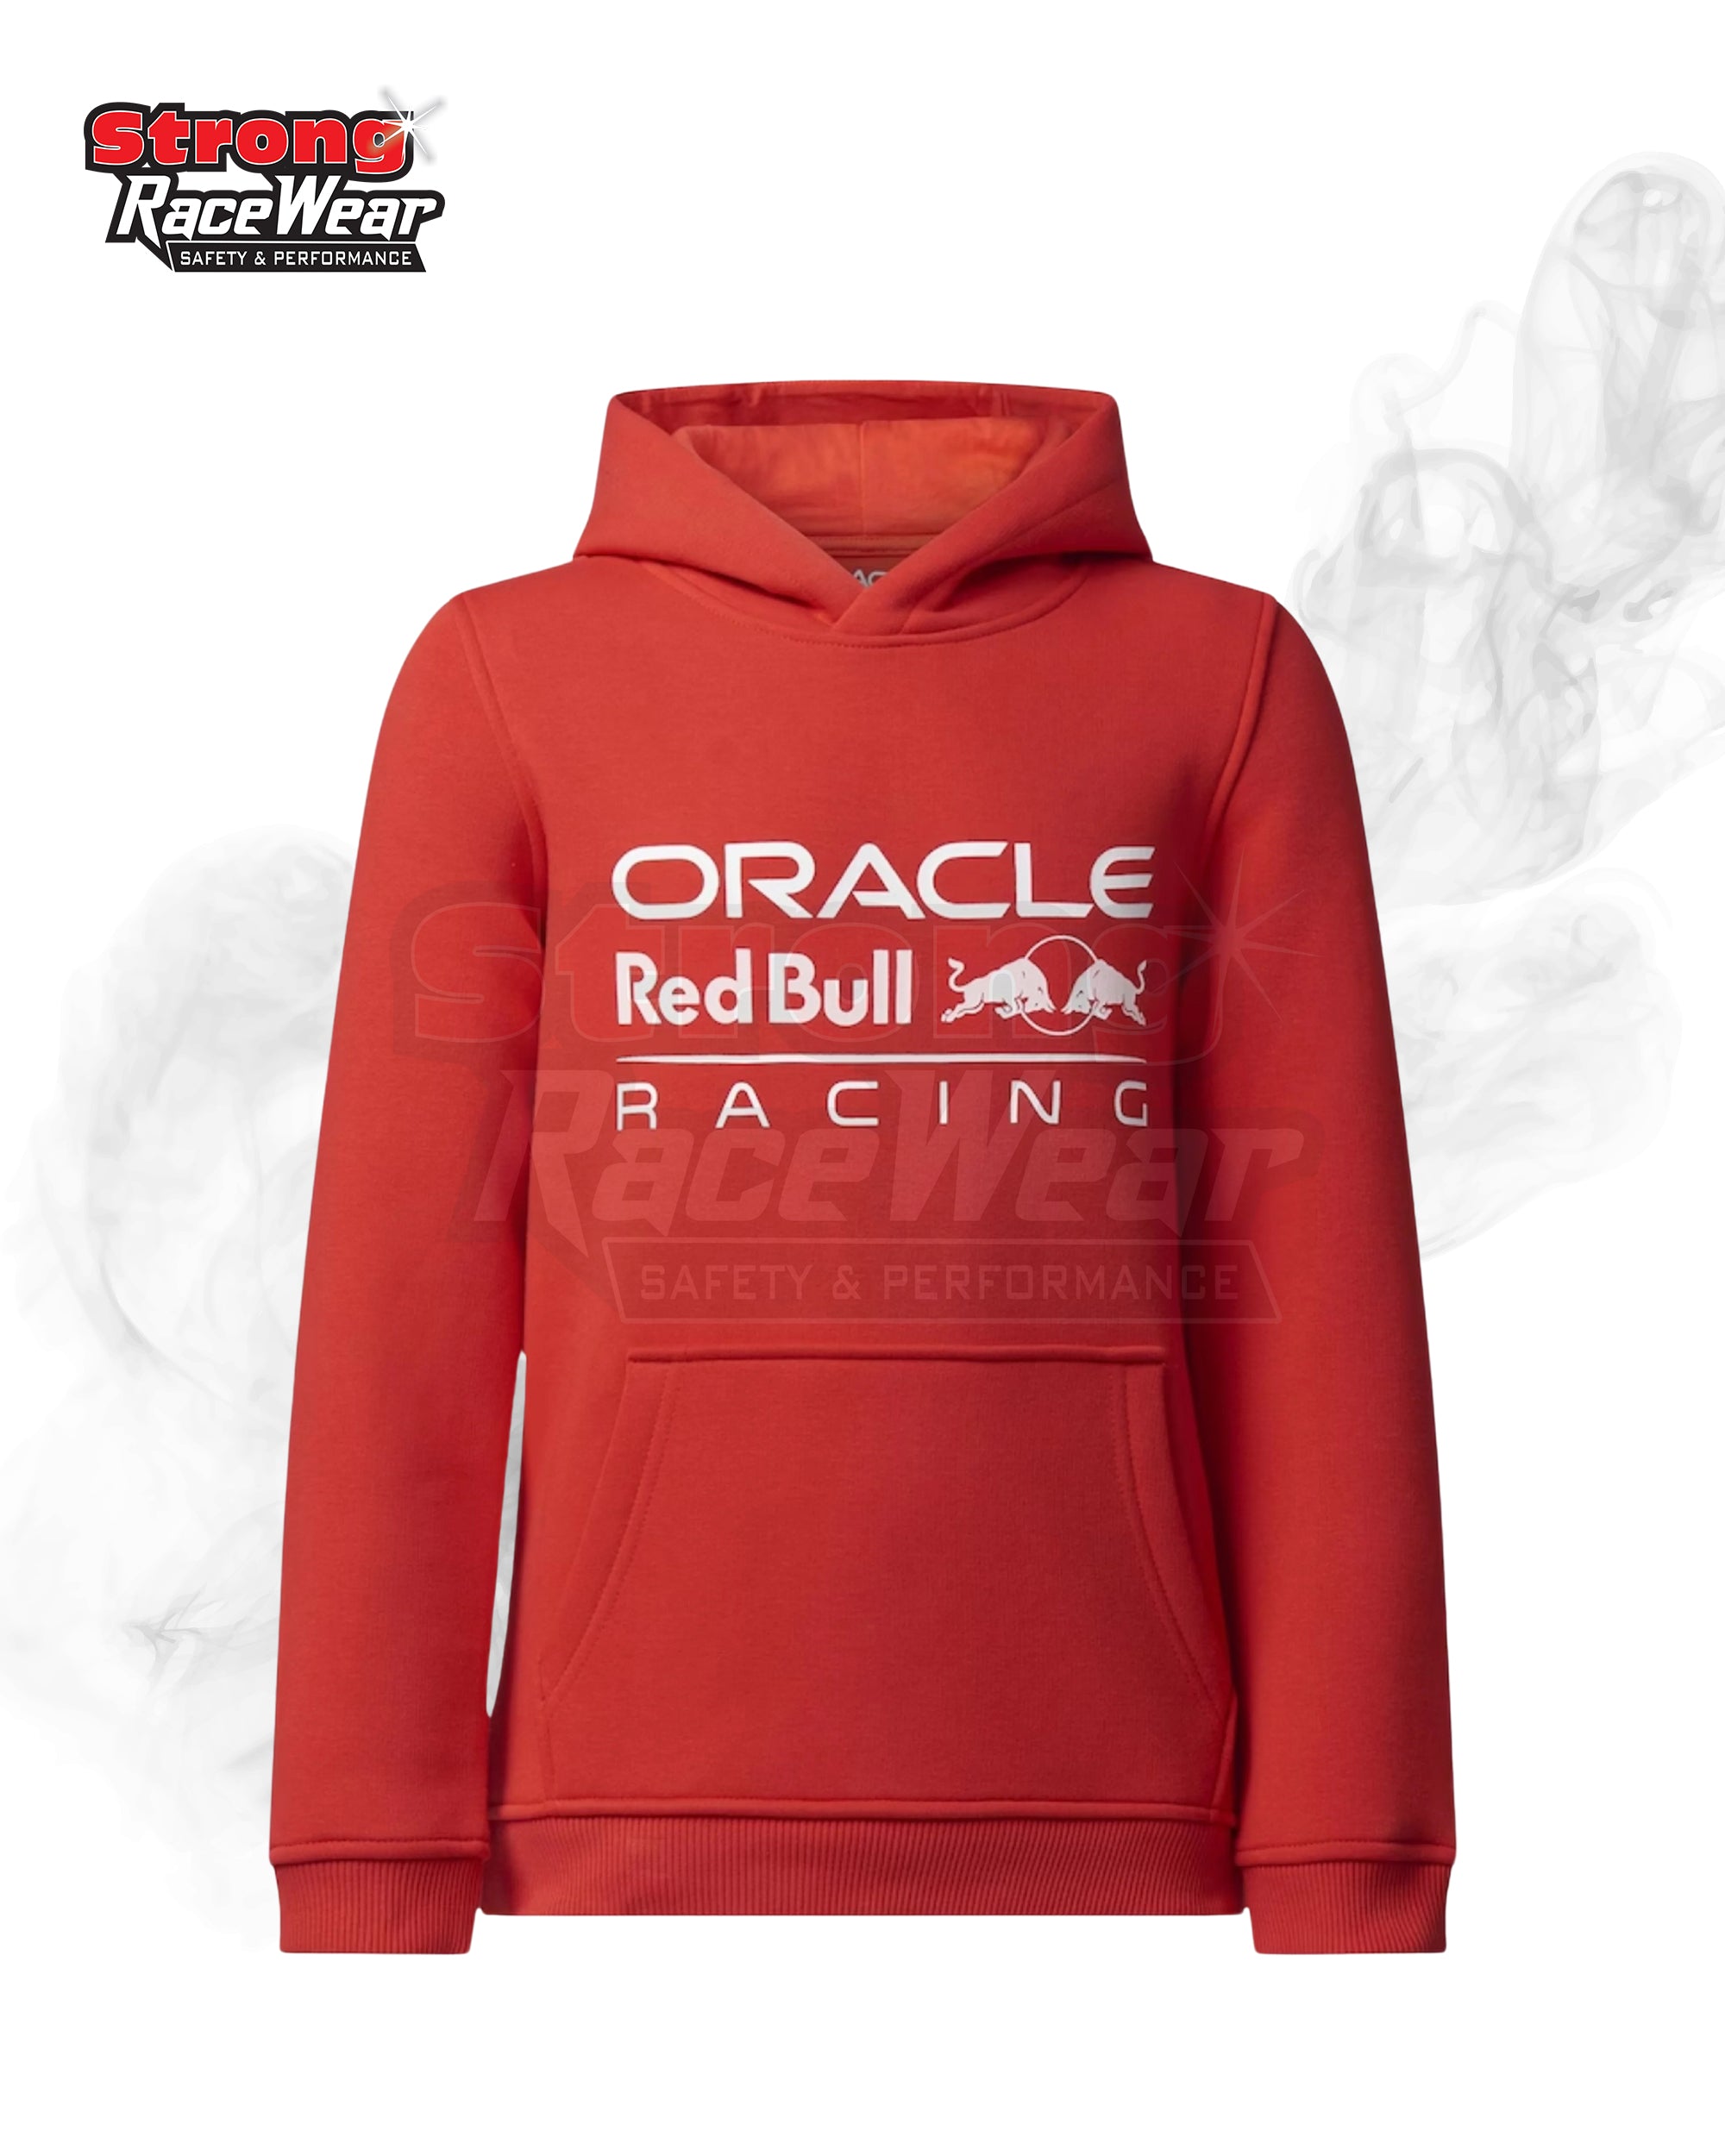 Oracle Red Bull Racing Logo Hoodies